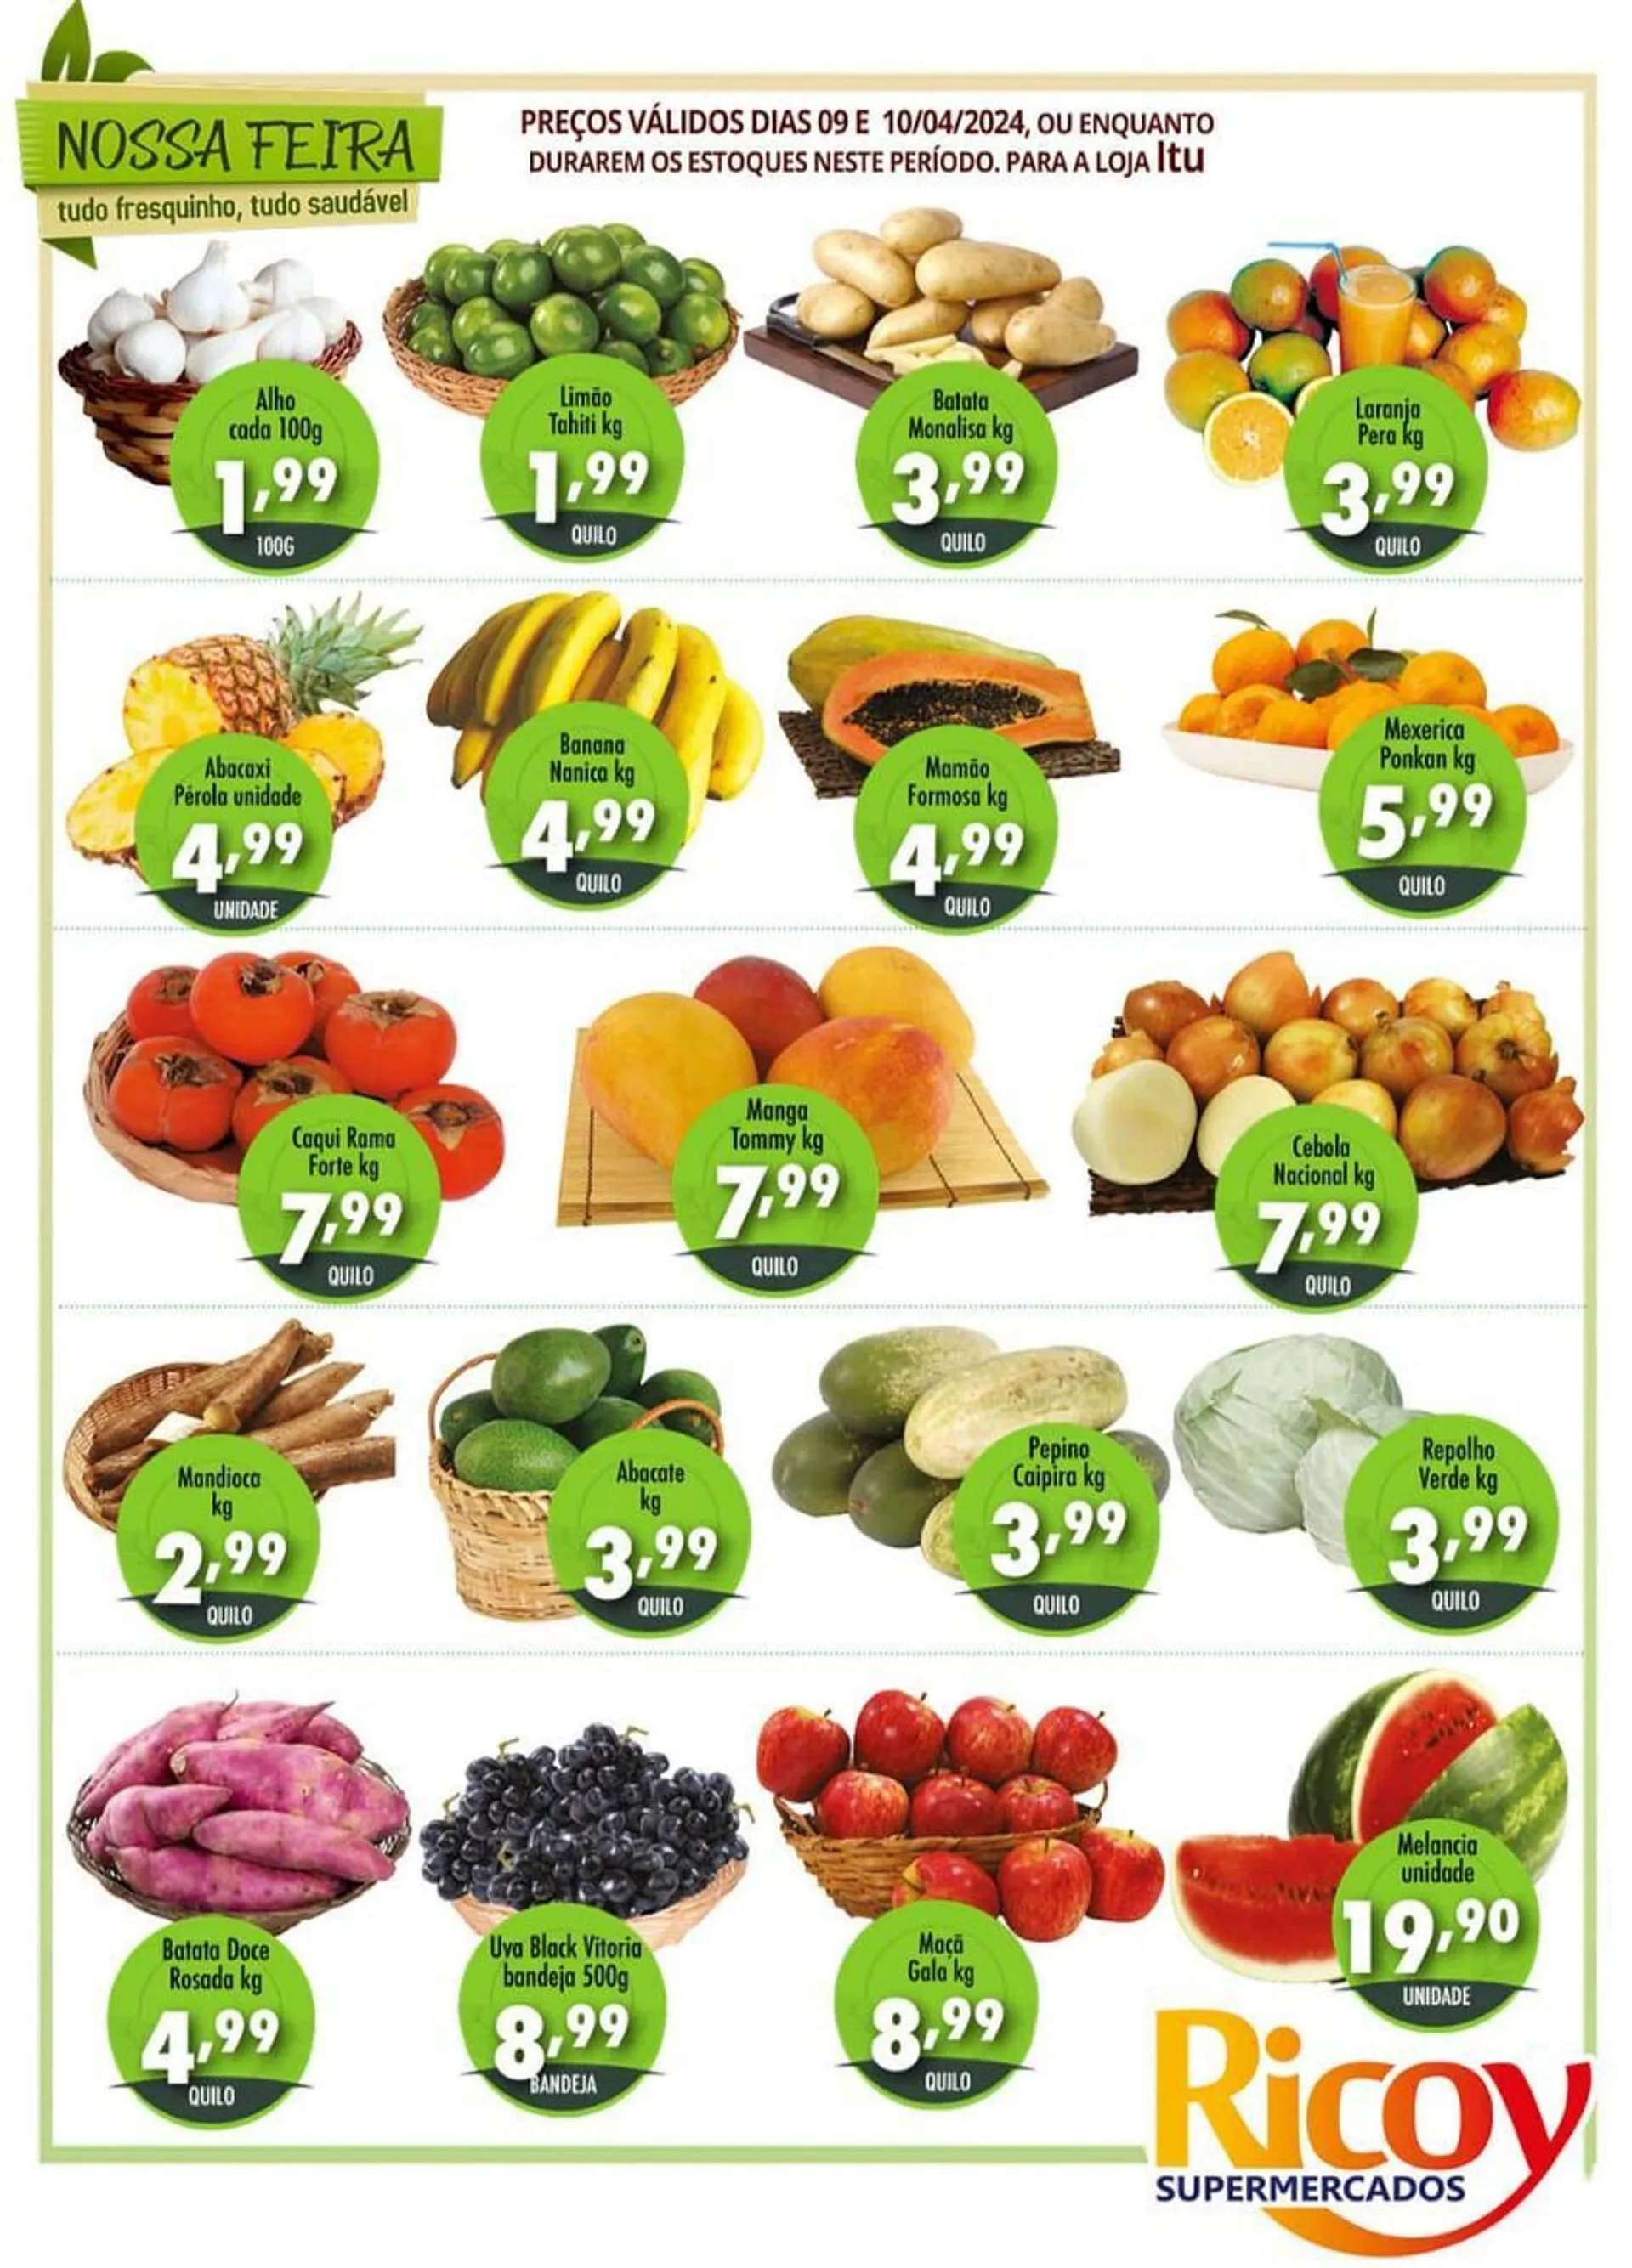 Encarte de Catálogo Ricoy Supermercados 10 de abril até 10 de abril 2024 - Pagina 